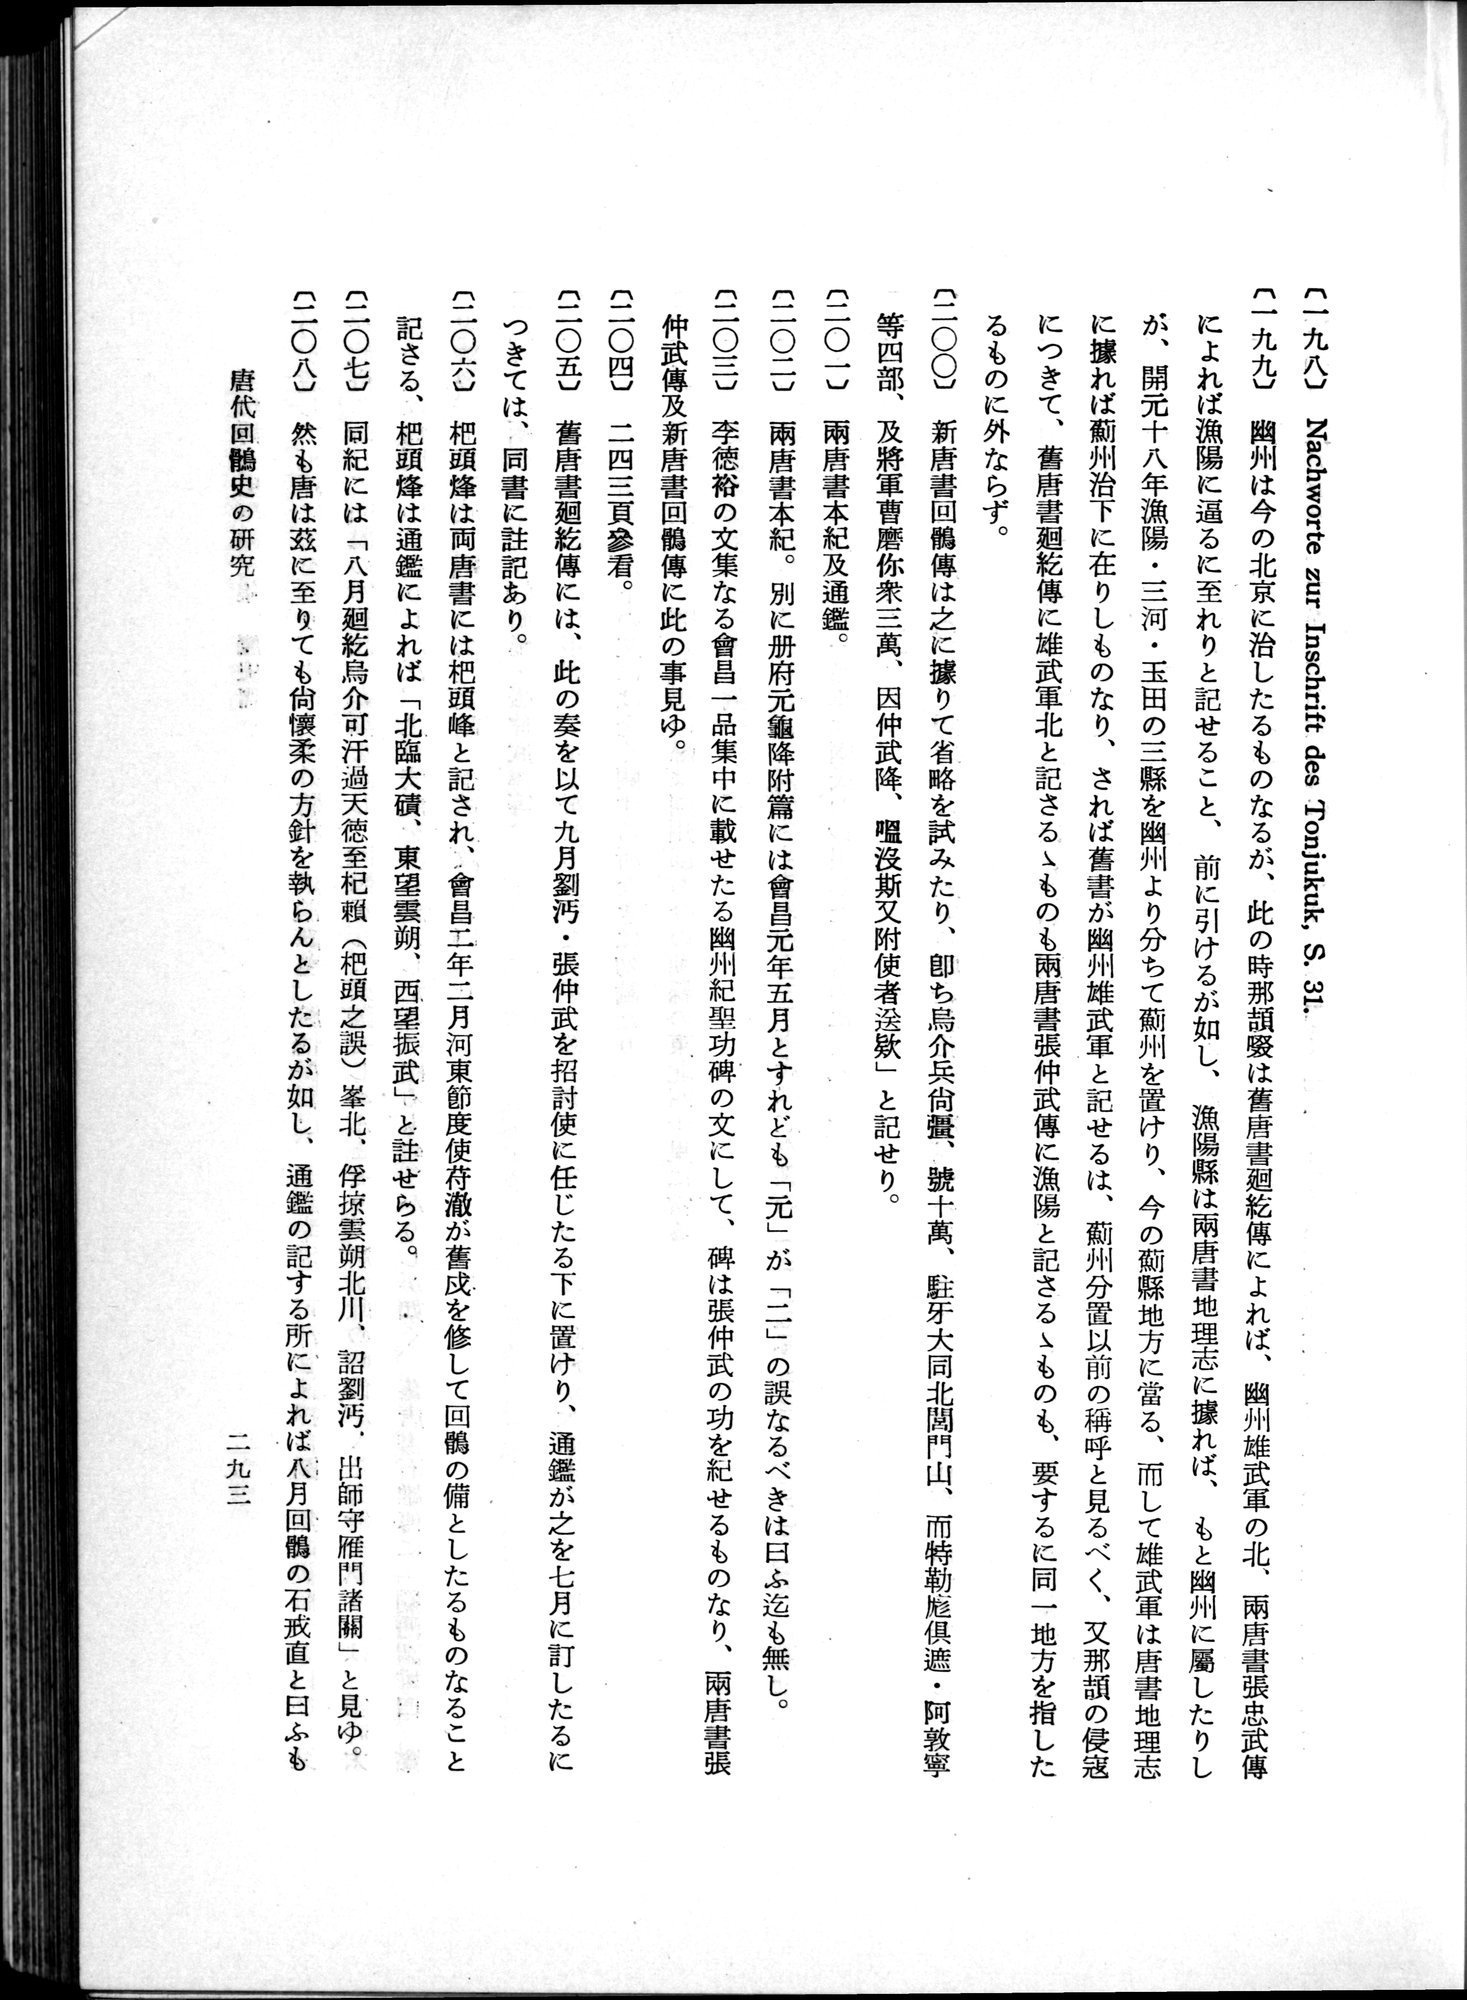 羽田博士史学論文集 : vol.1 / Page 331 (Grayscale High Resolution Image)